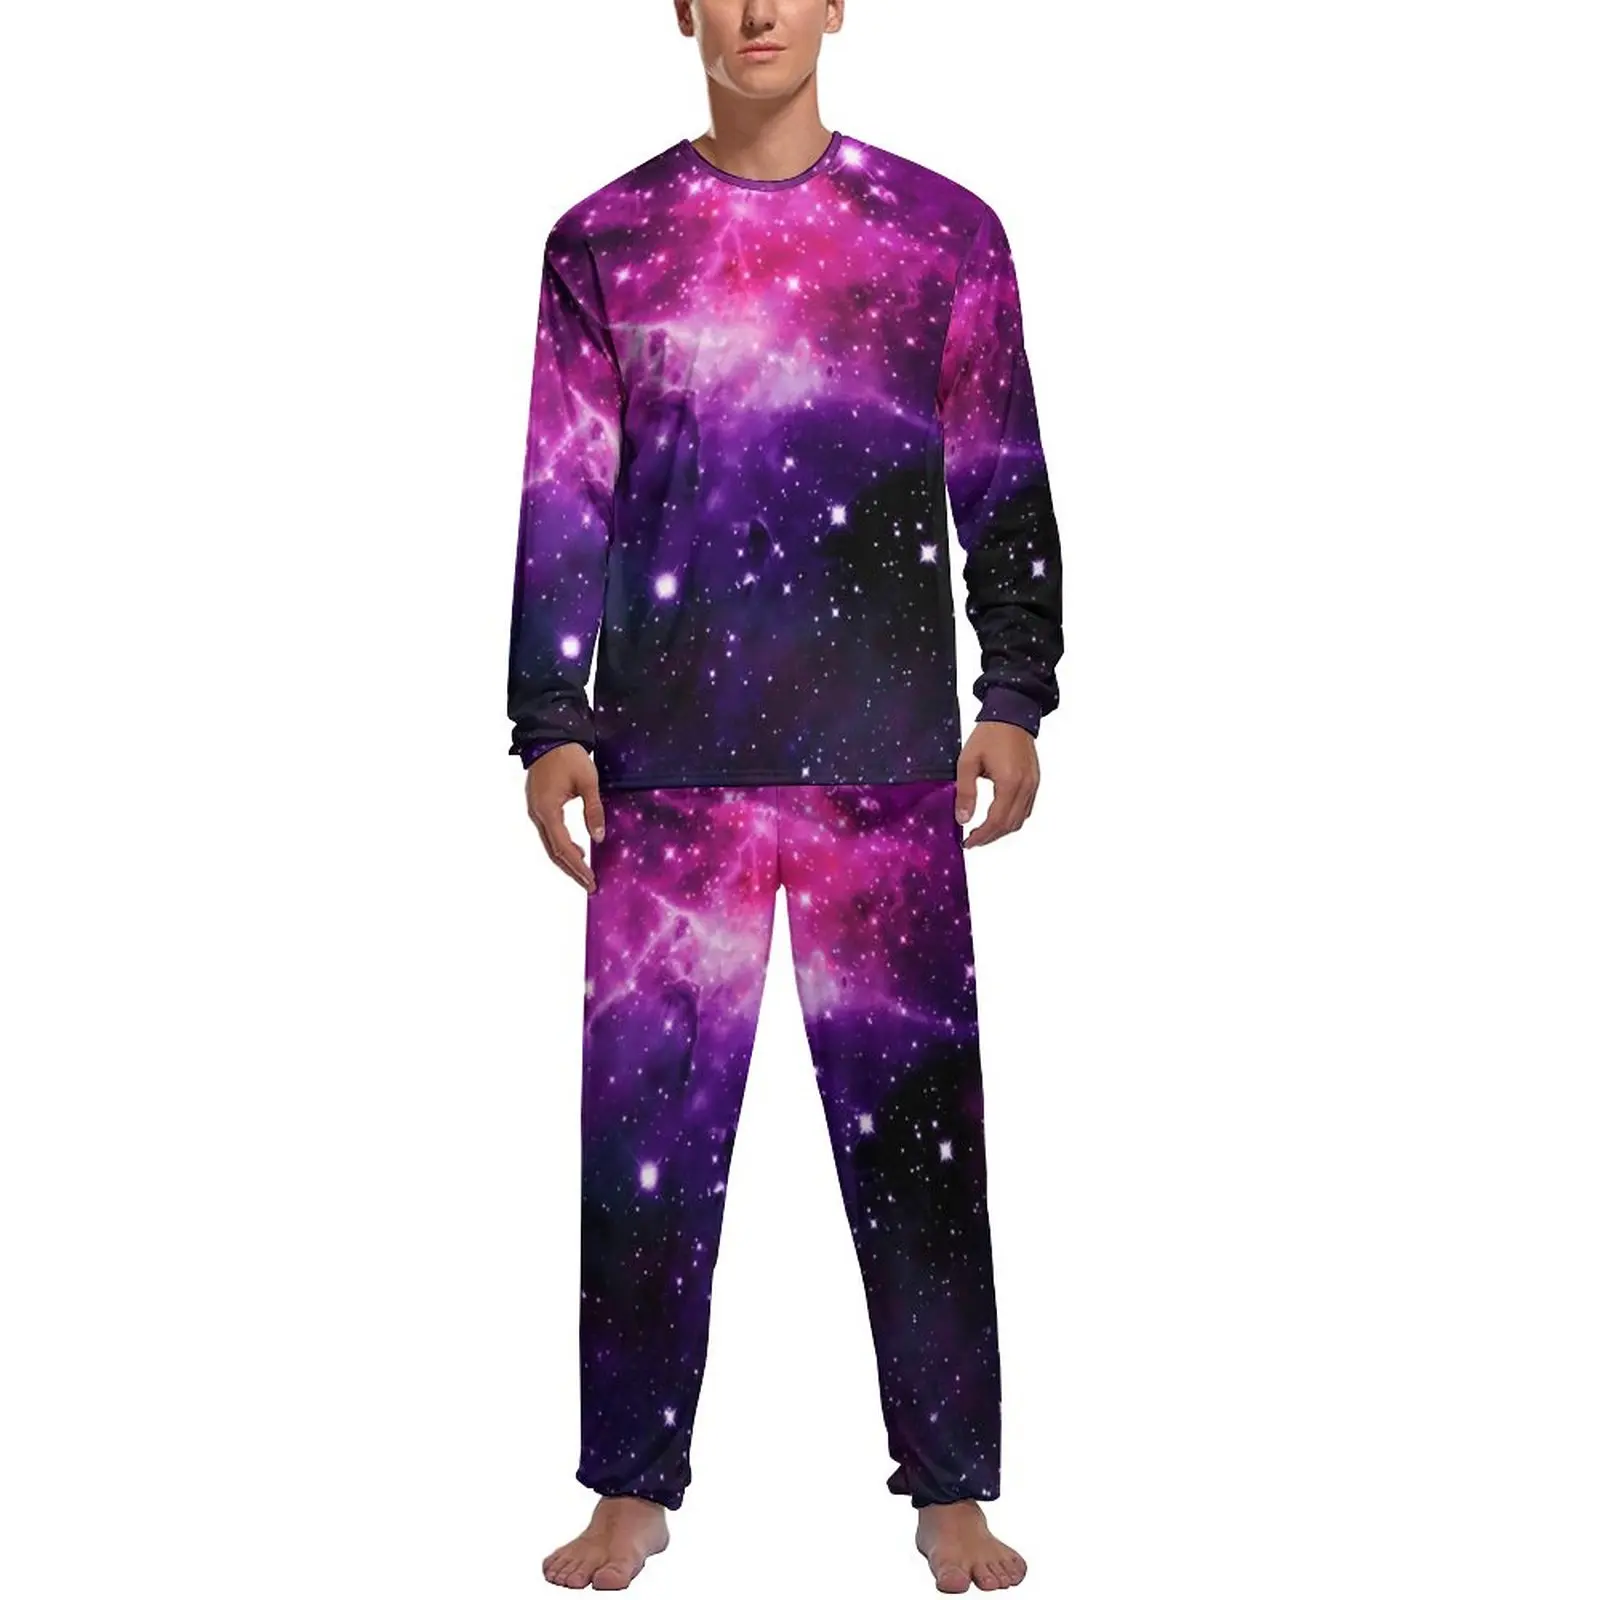 

Фиолетовые пижамы с галактикой, с длинным рукавом, с принтом звезд, 2 предмета, эстетический пижамный комплект, осенняя мужская графическая романтическая одежда для сна